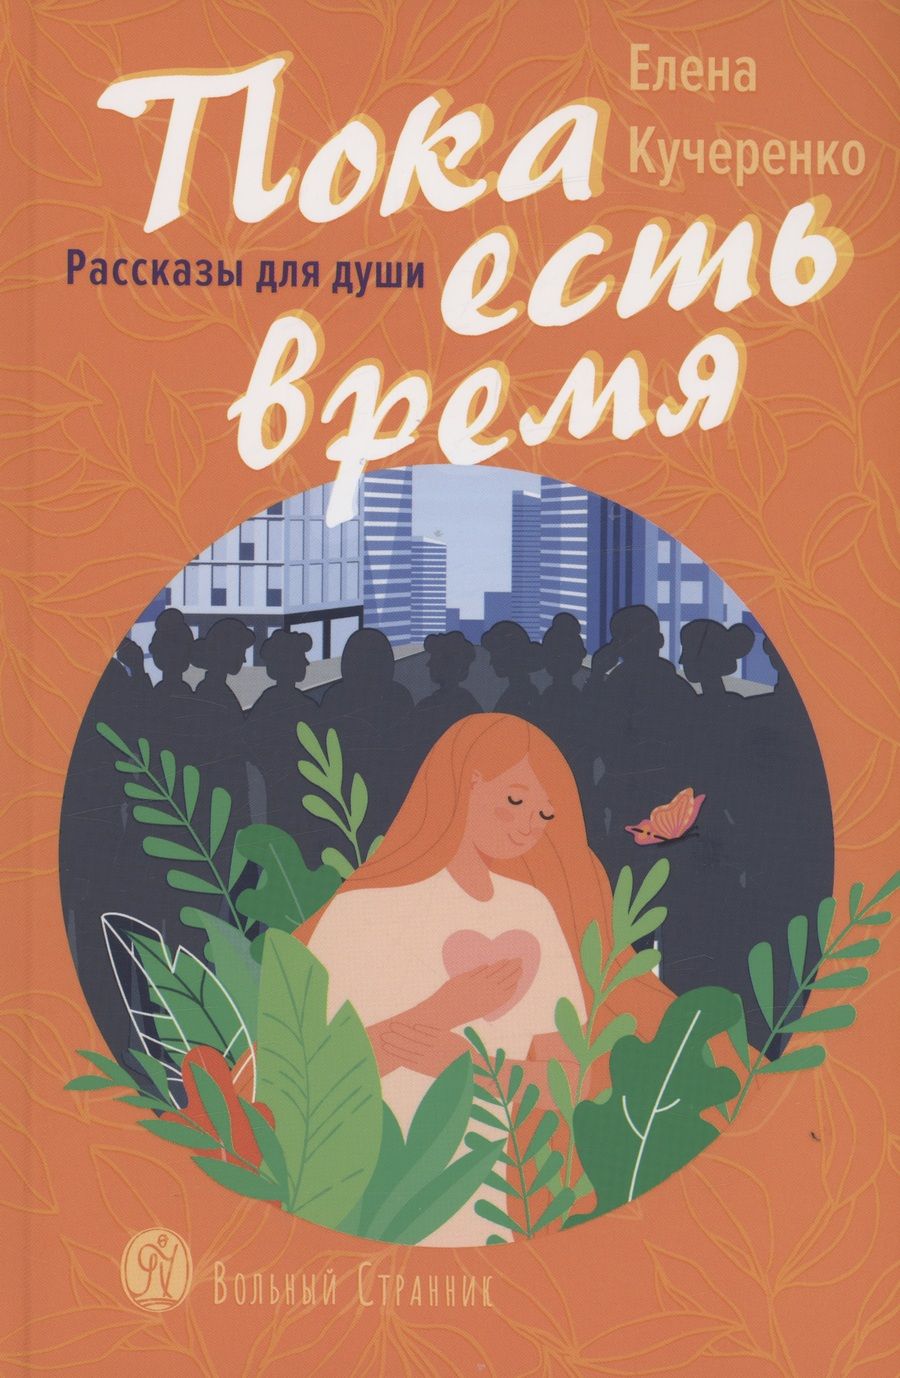 Обложка книги "Кучеренко: Пока есть время. Рассказы для души"